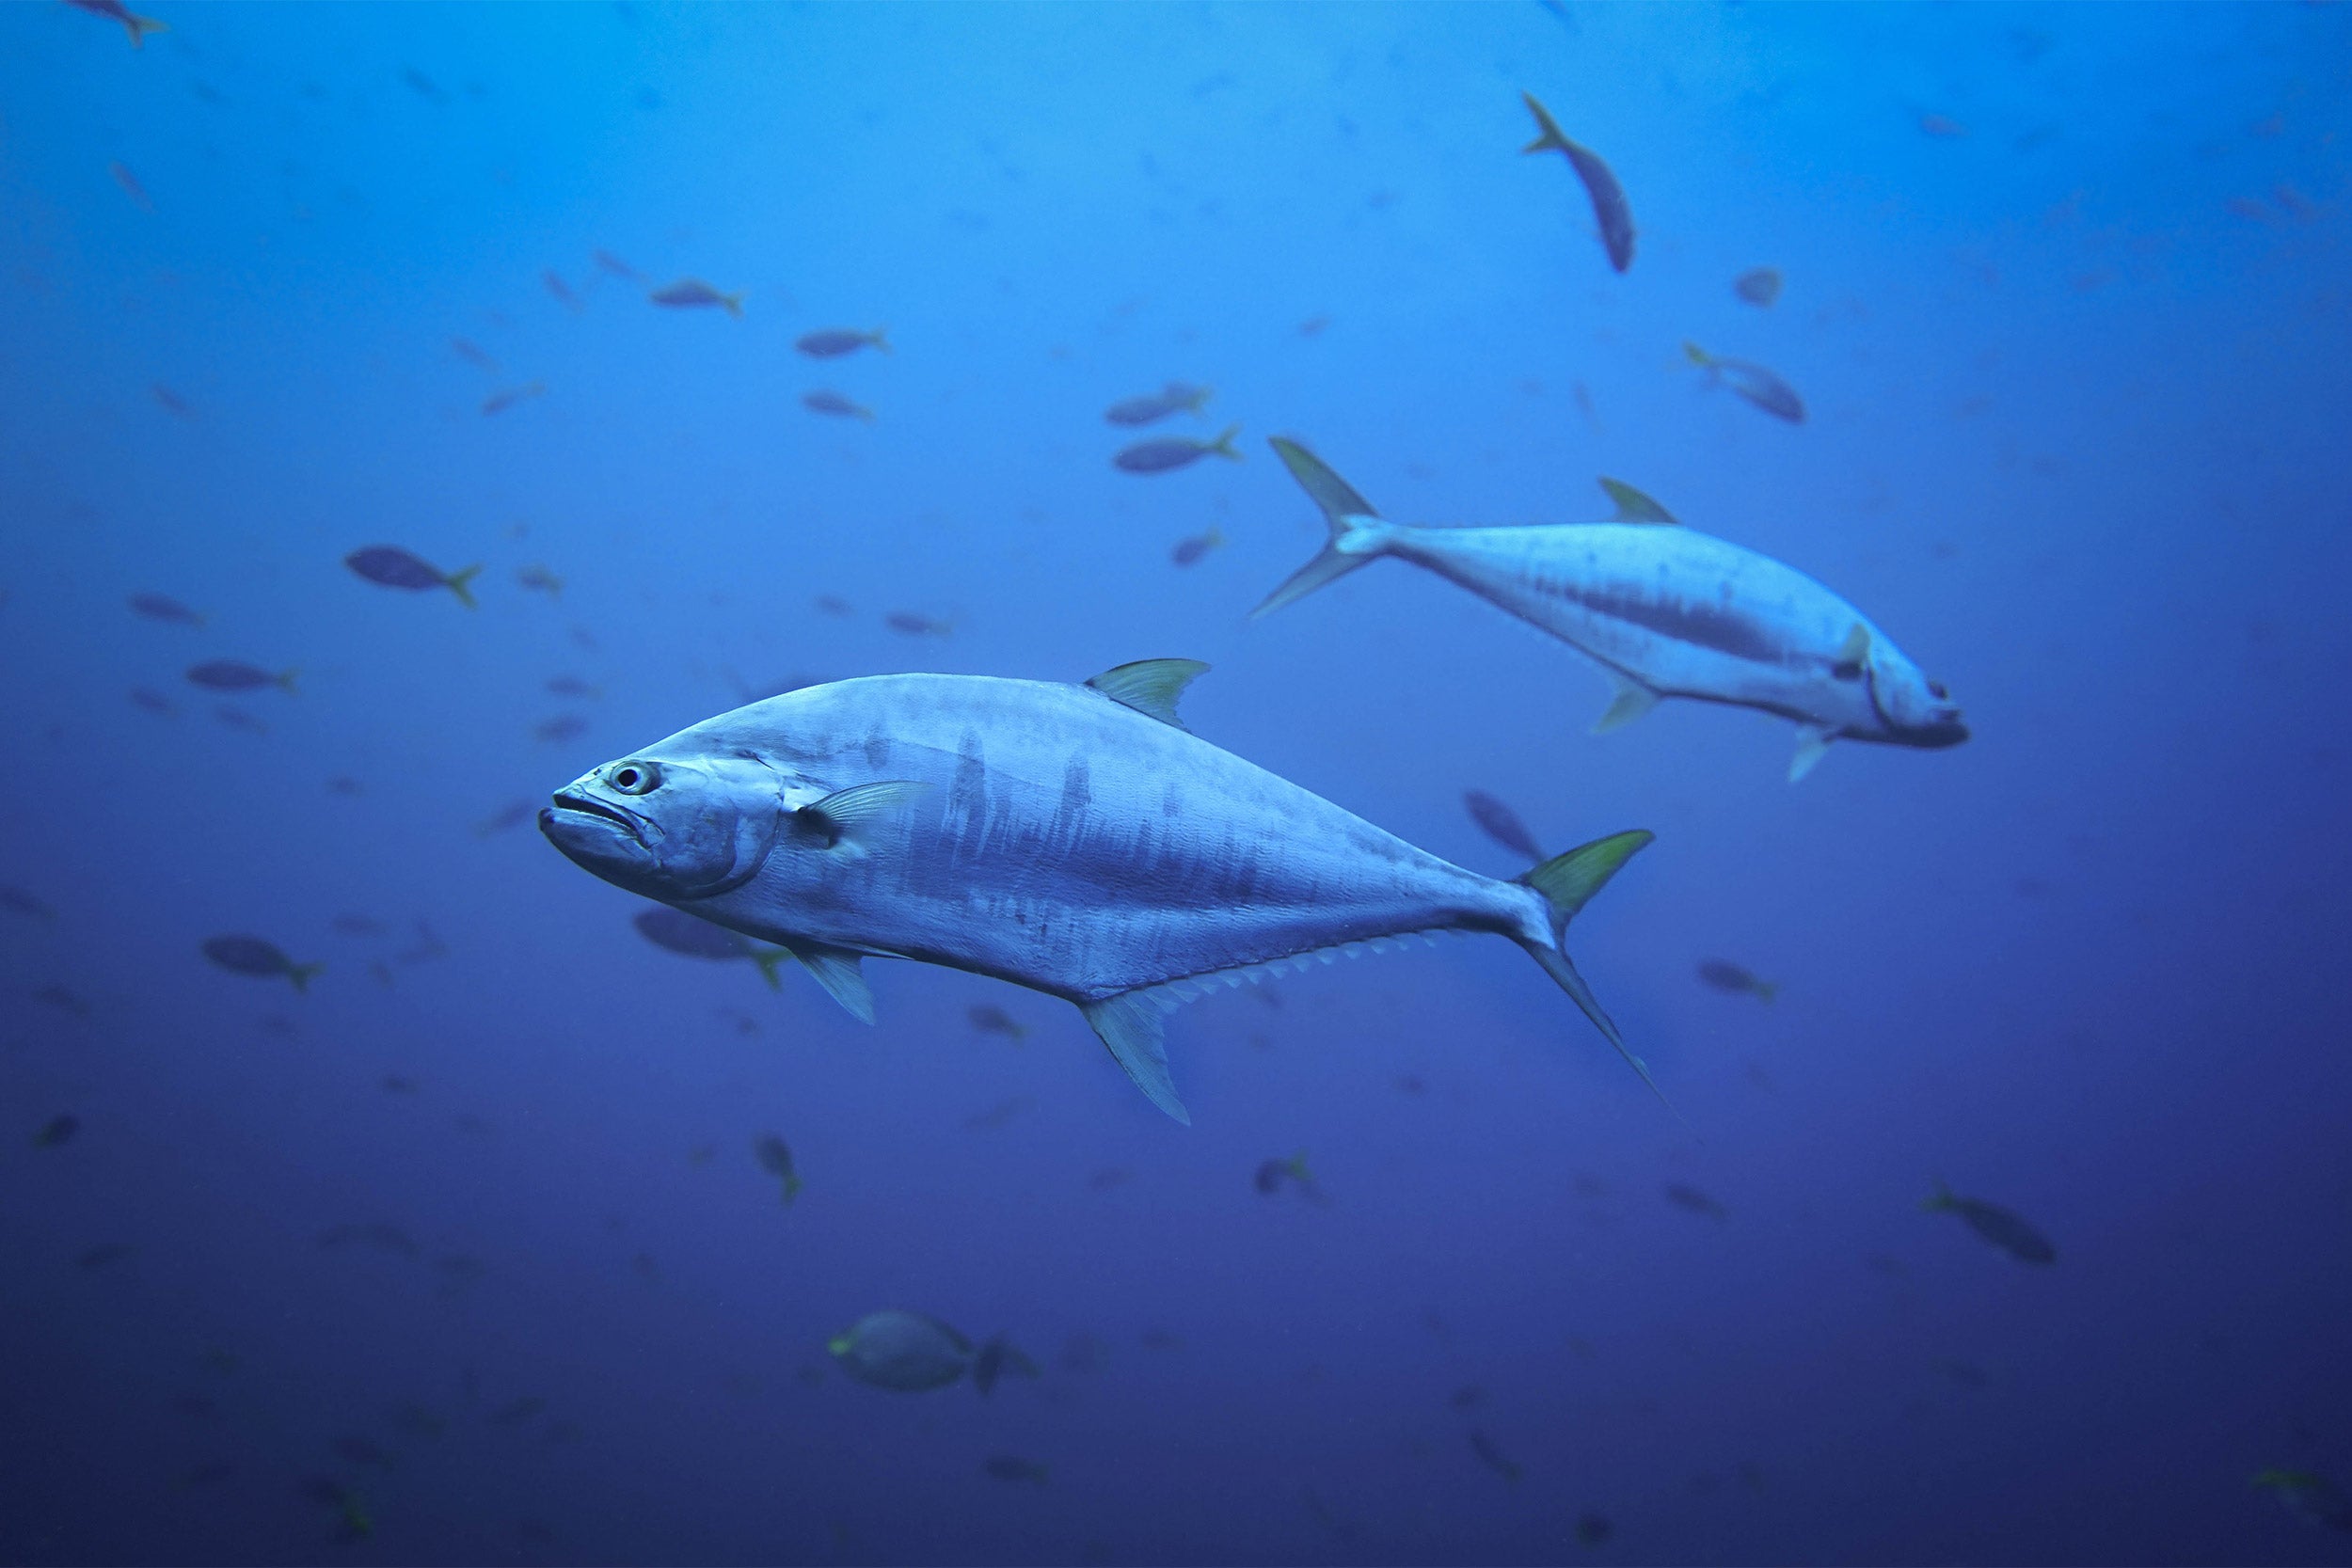 Mercury in Fish: Is It Dangerous to Us?